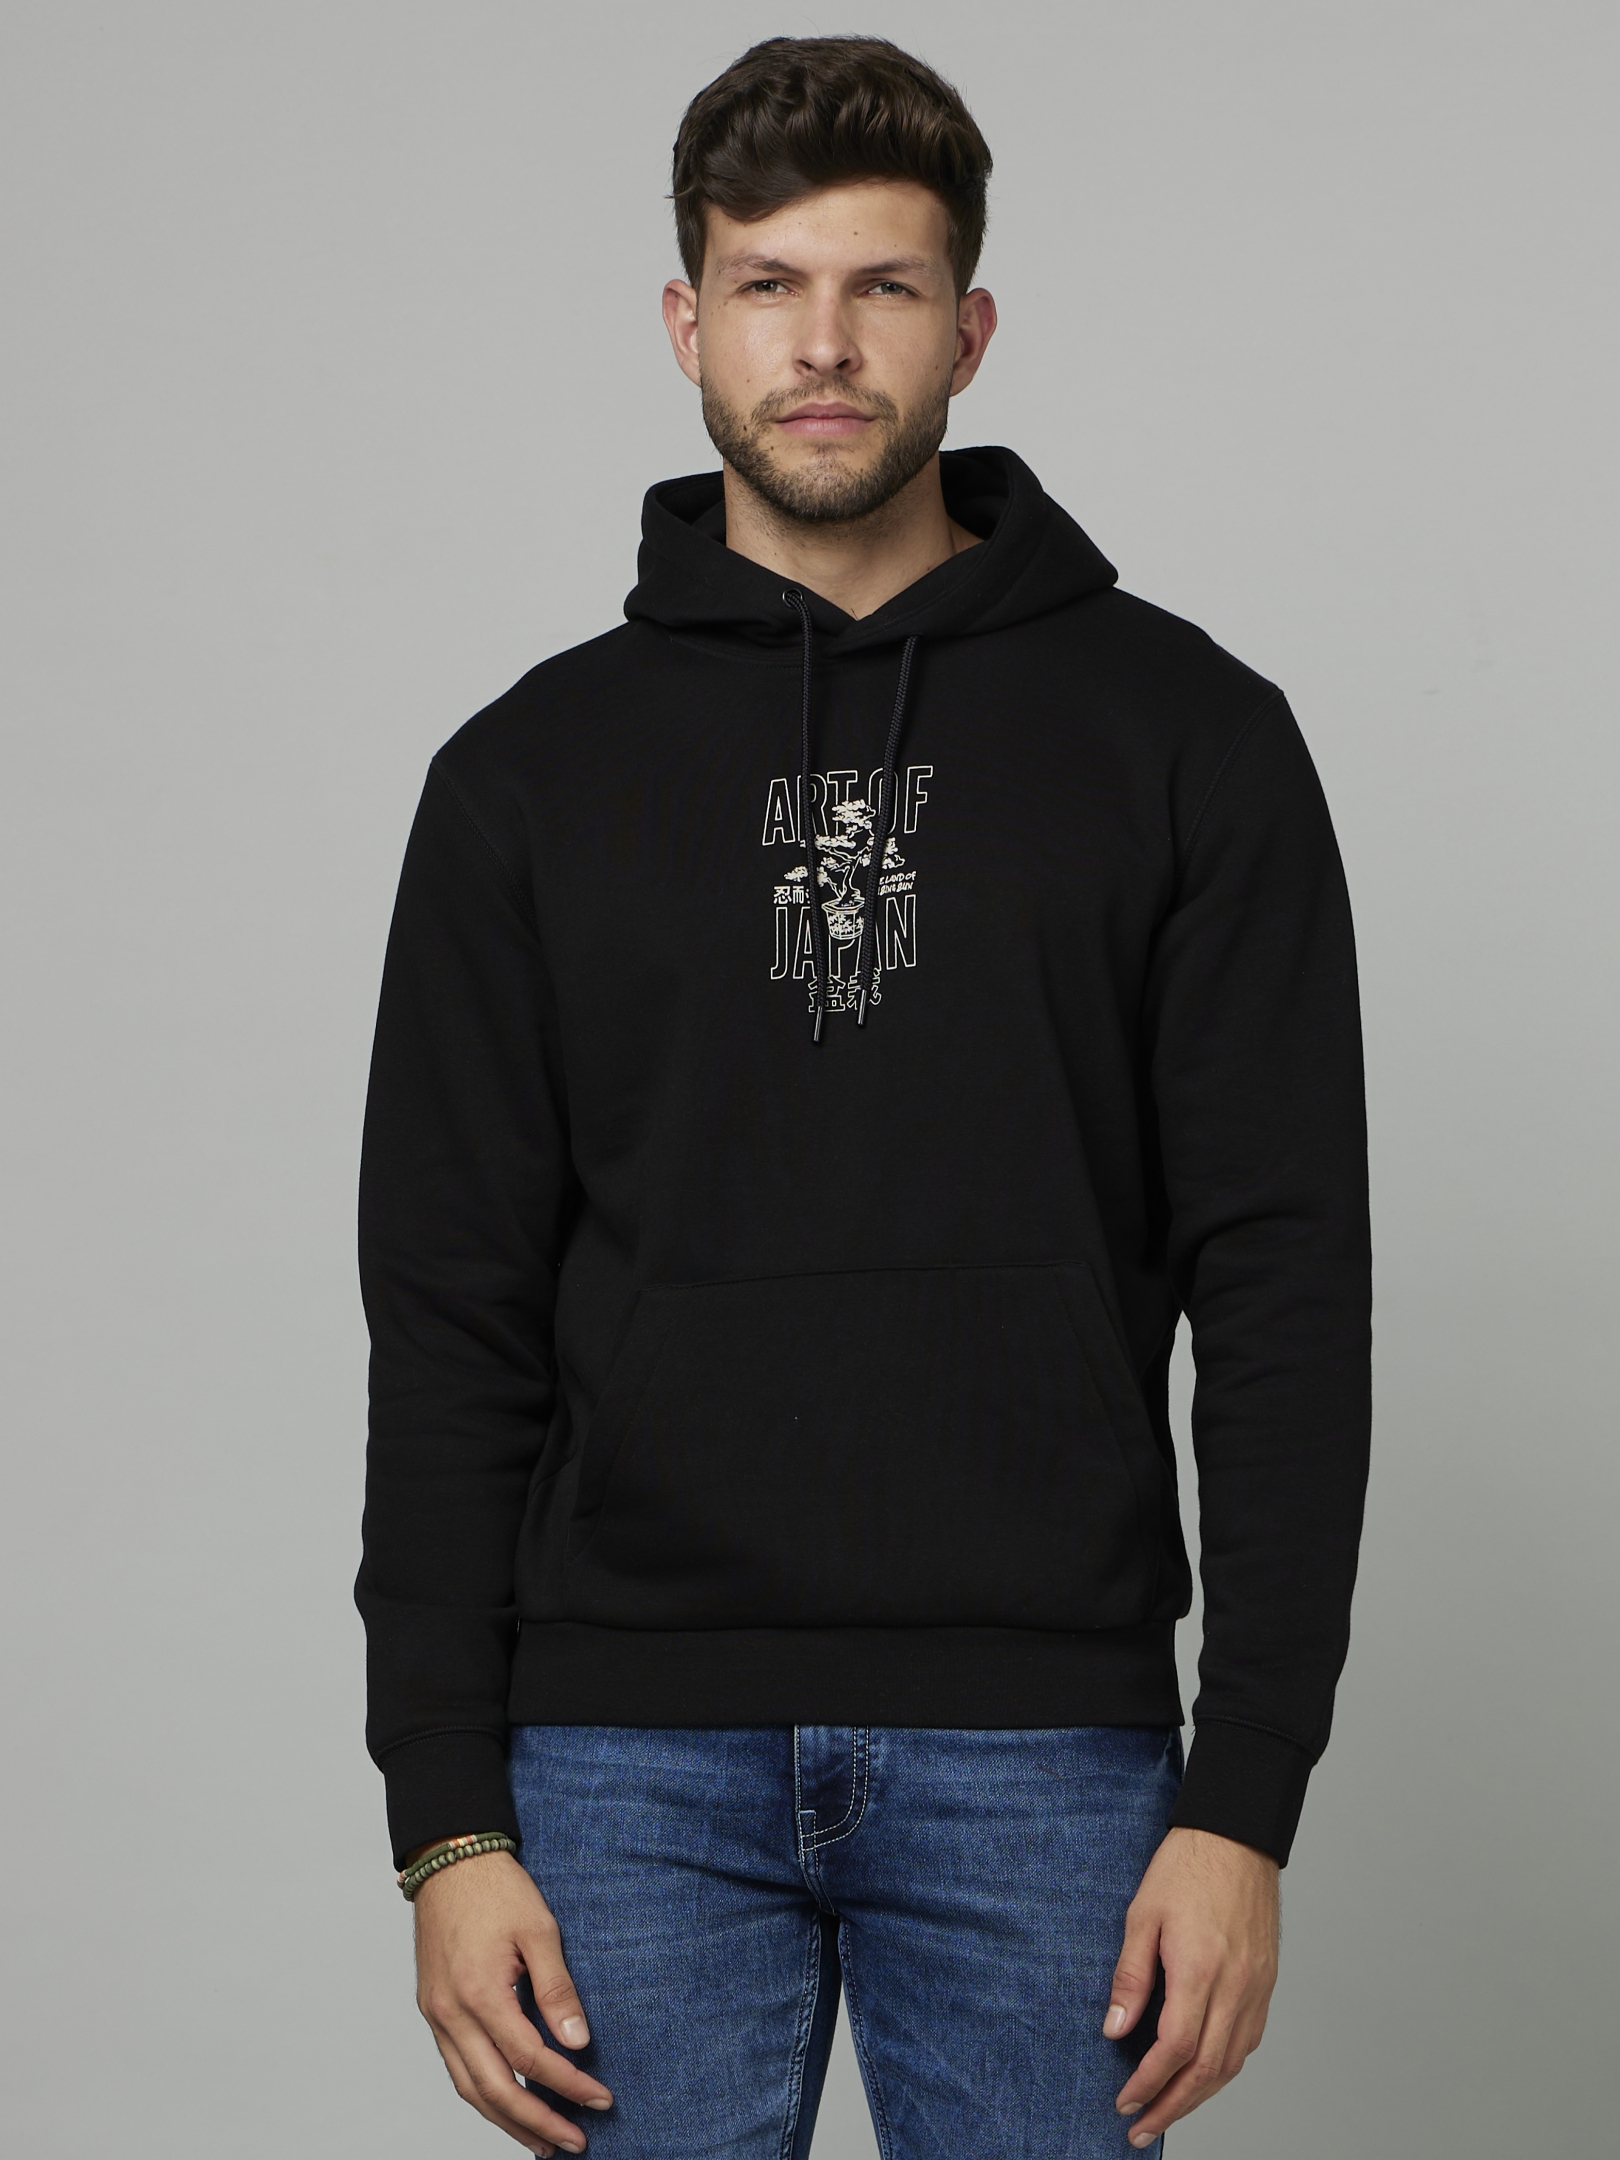 Men's Black Graphics Sweatshirts